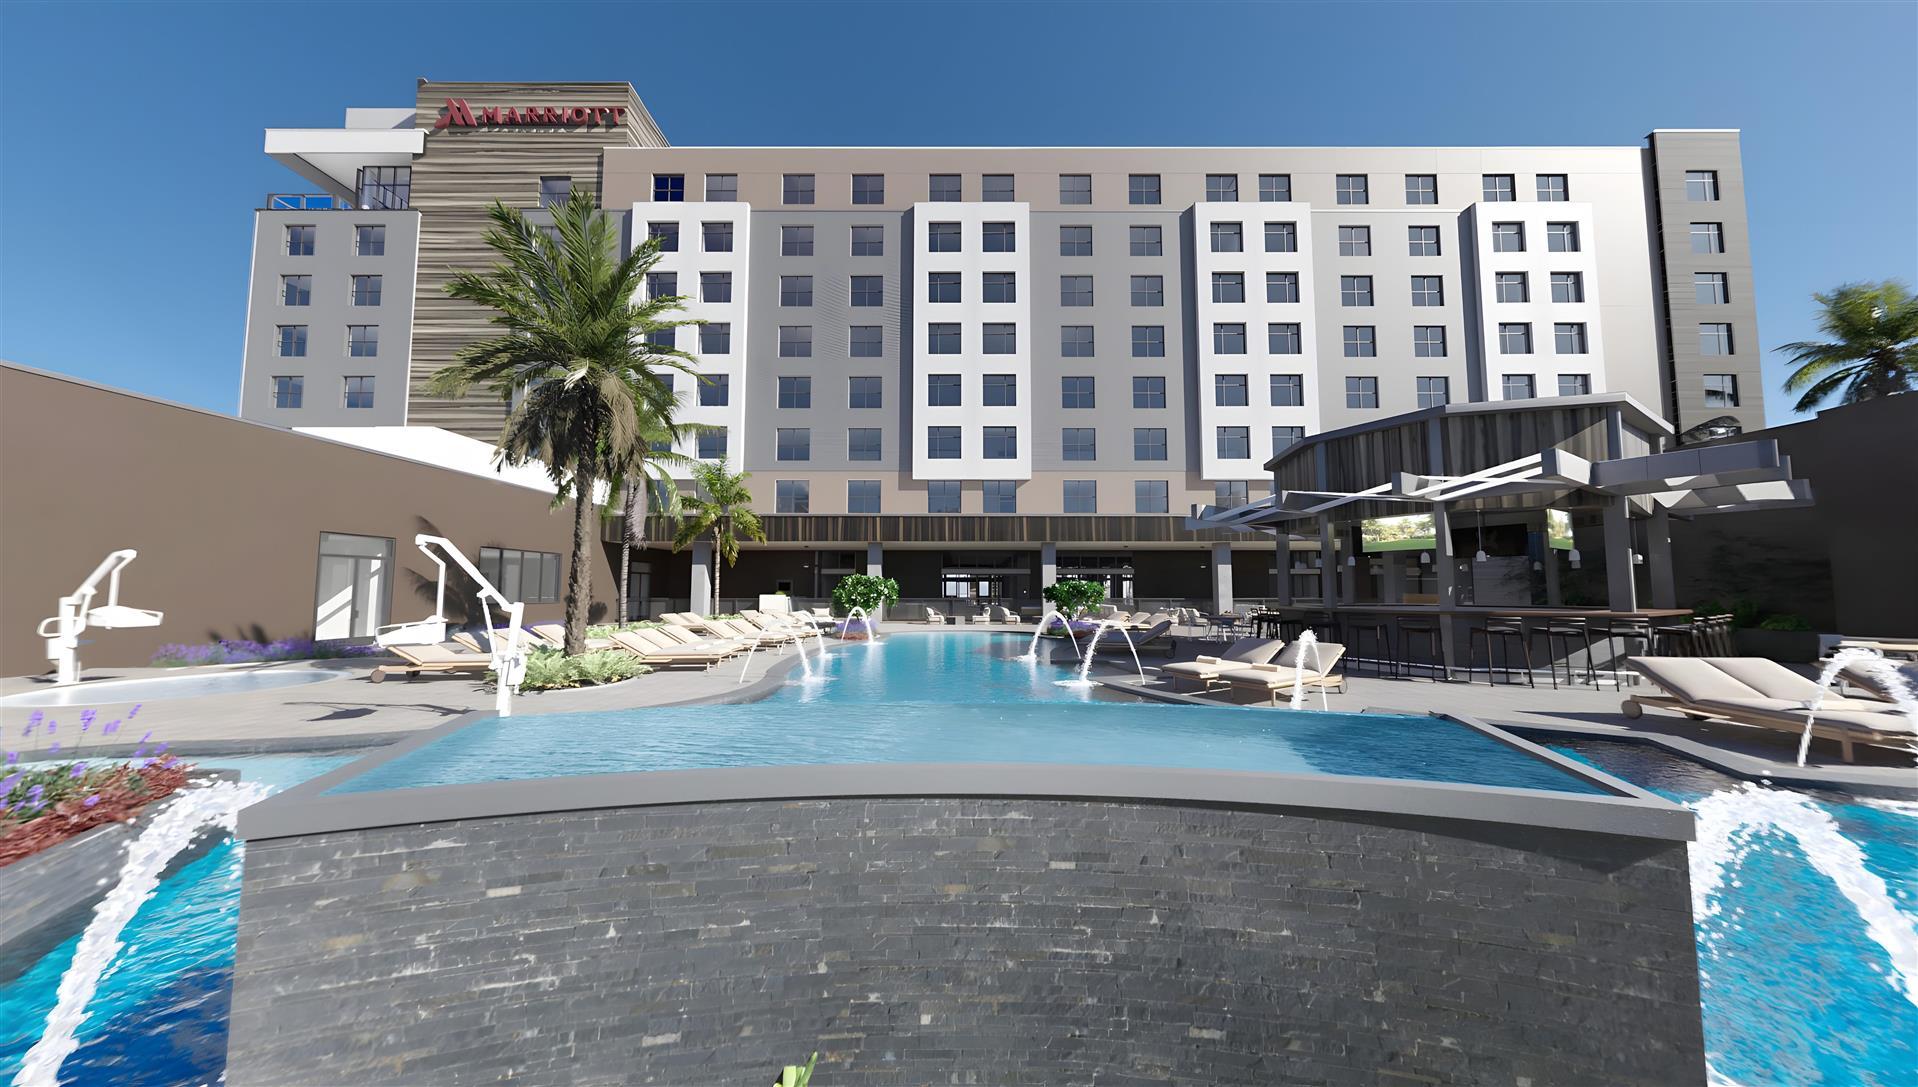 Palmetto Marriott Resort & Spa at the Bradenton Area Convention Center in Palmetto, FL